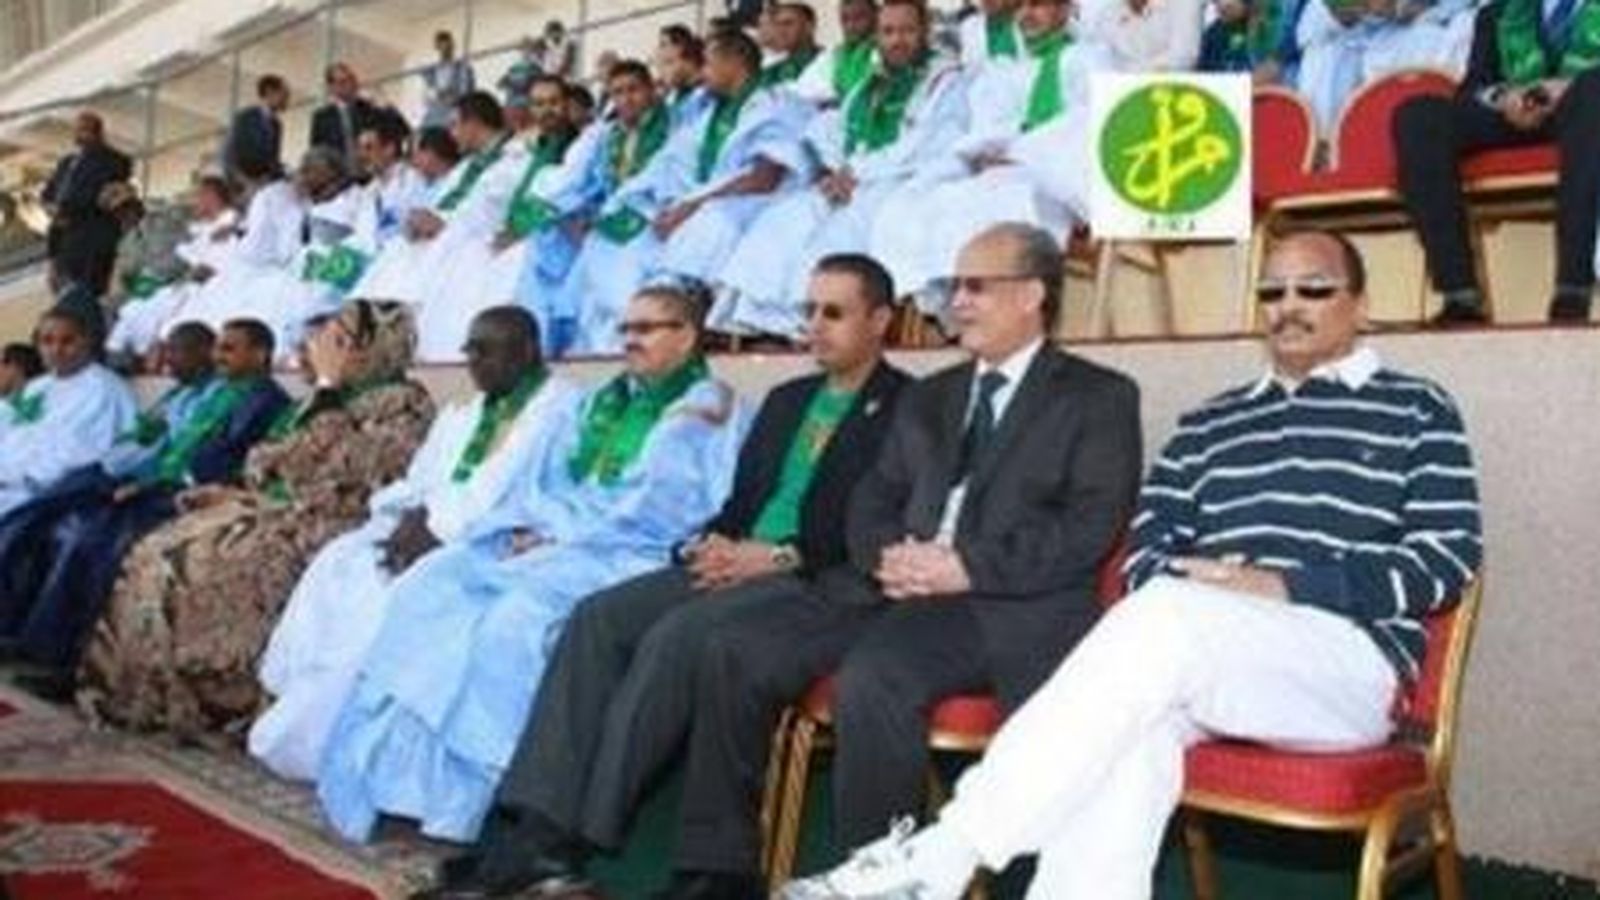 Foto: El presidente de Mauritania, viendo el encuentro (La Gazzetta dello Sport)